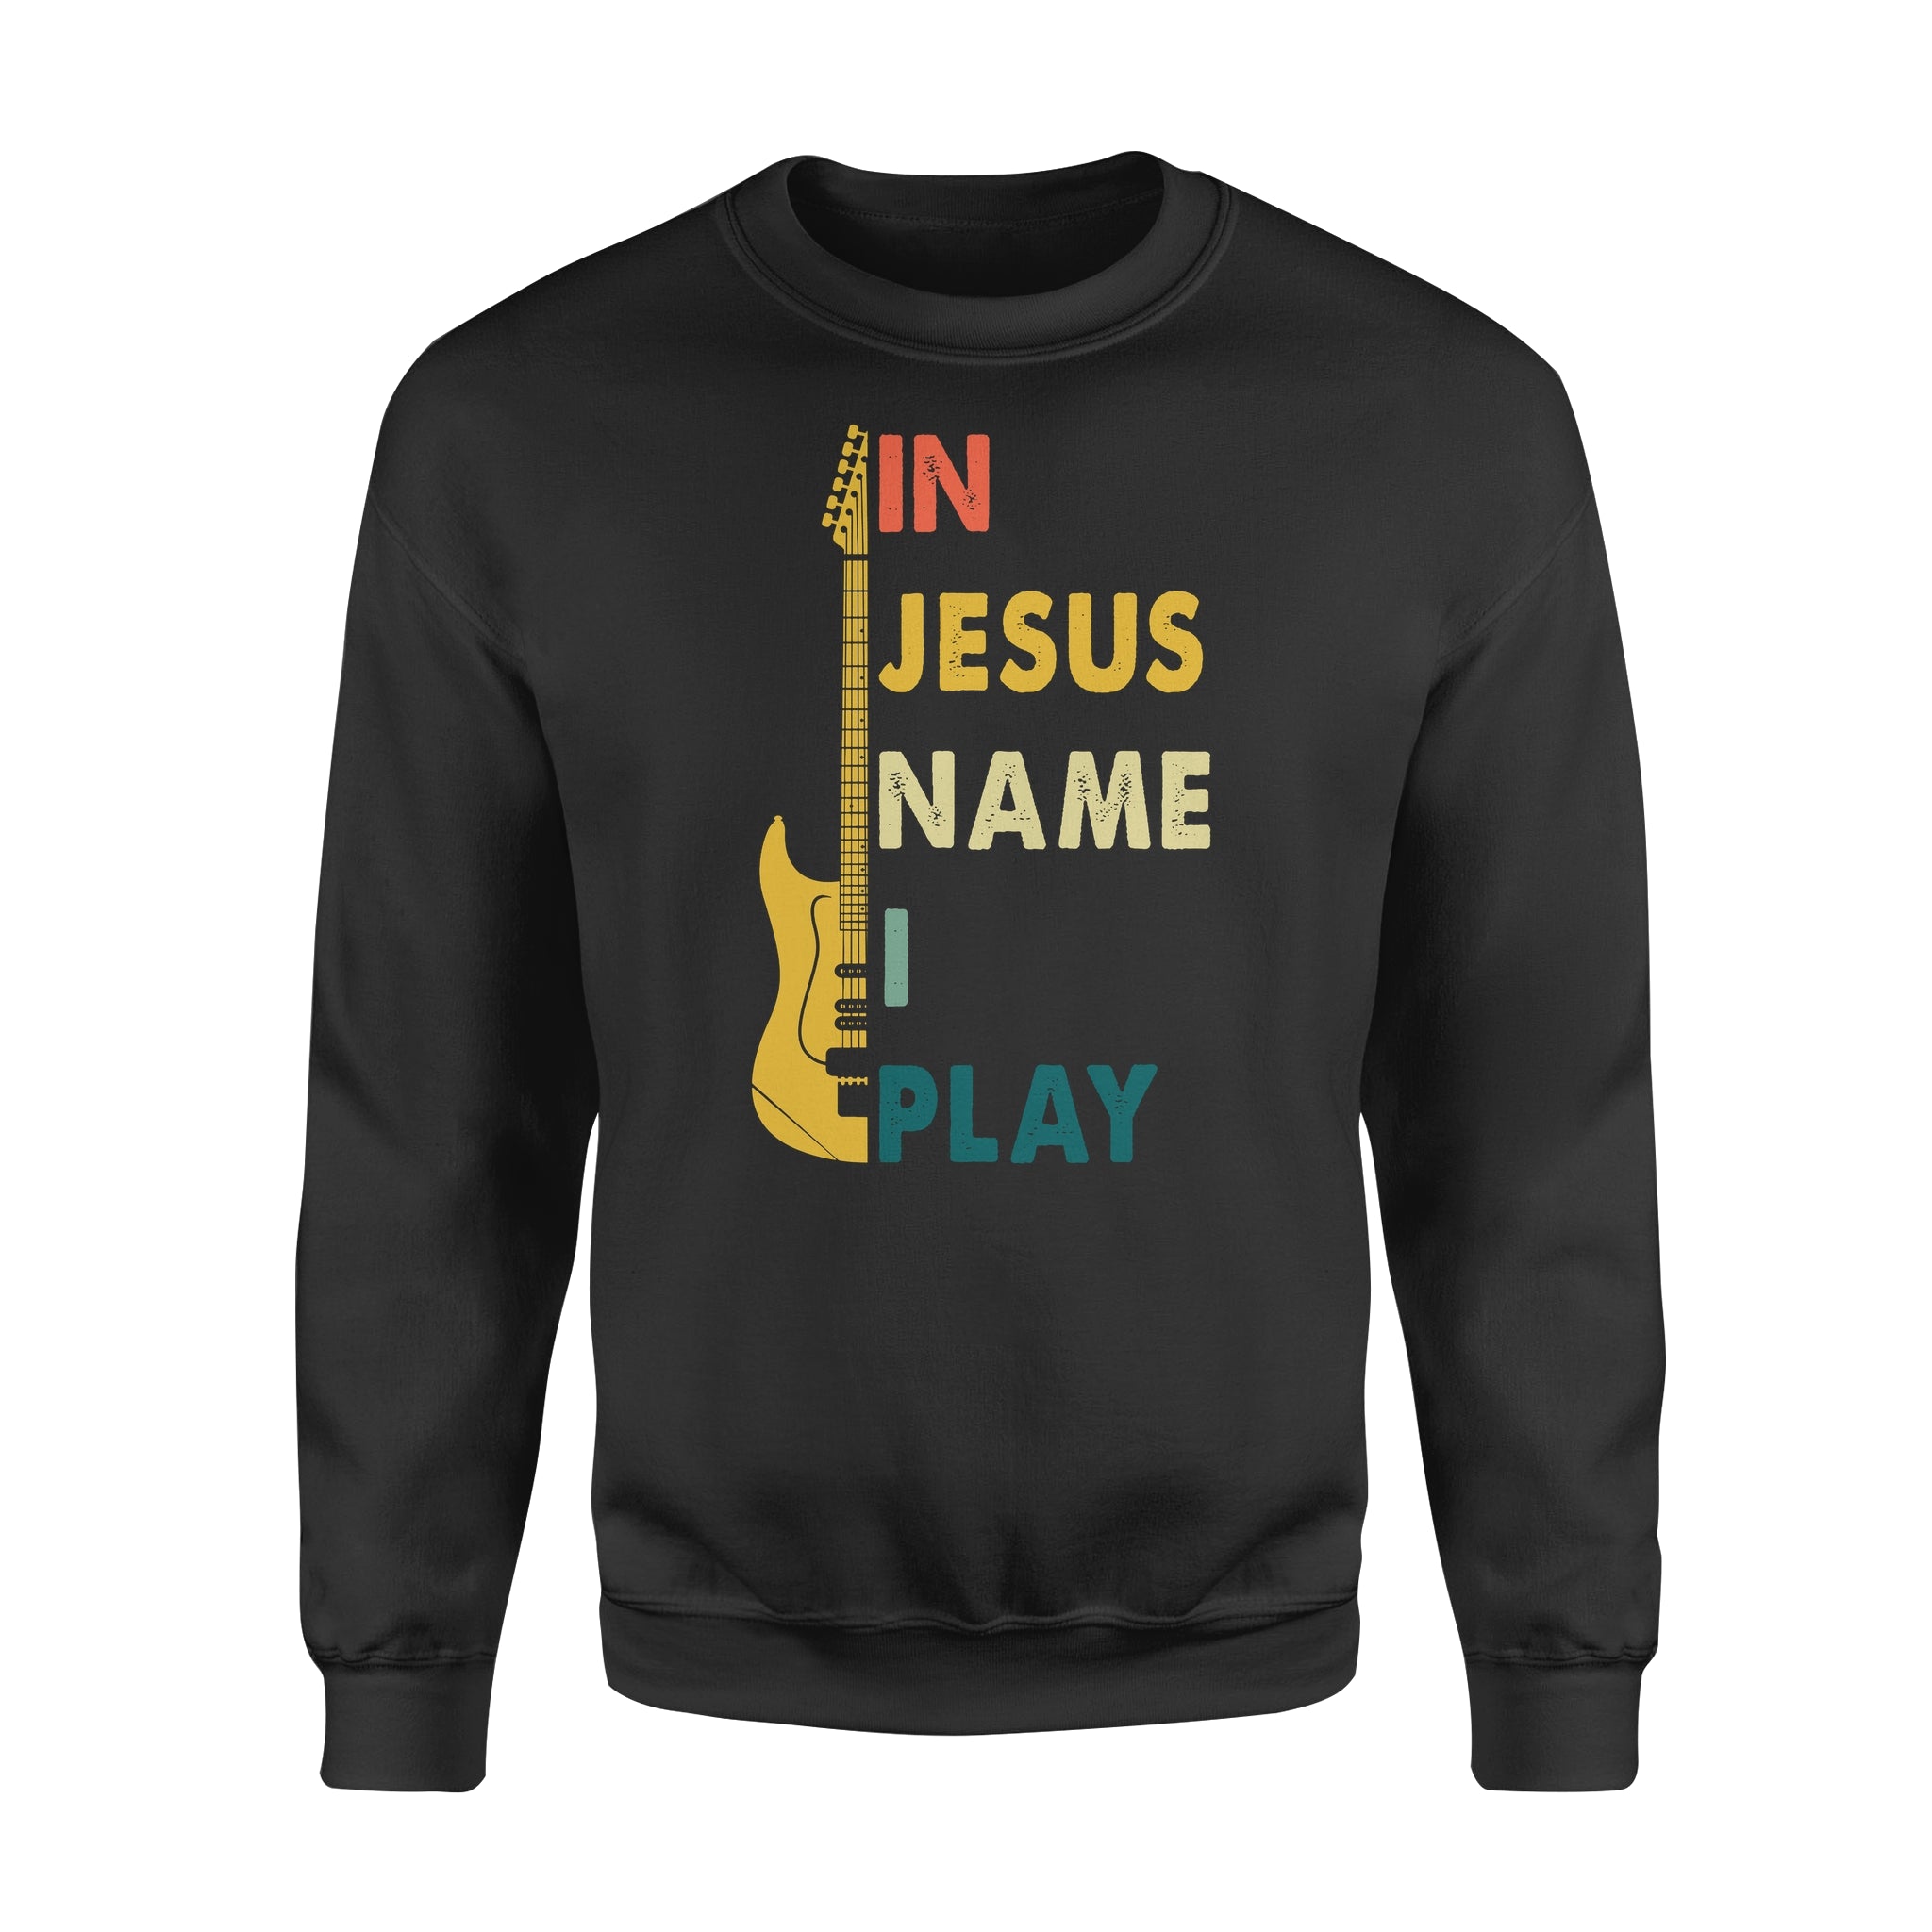 Hooby GIft Idea - In Jesus Name I Play Guitar - Standard Crew Neck Sweatshirt